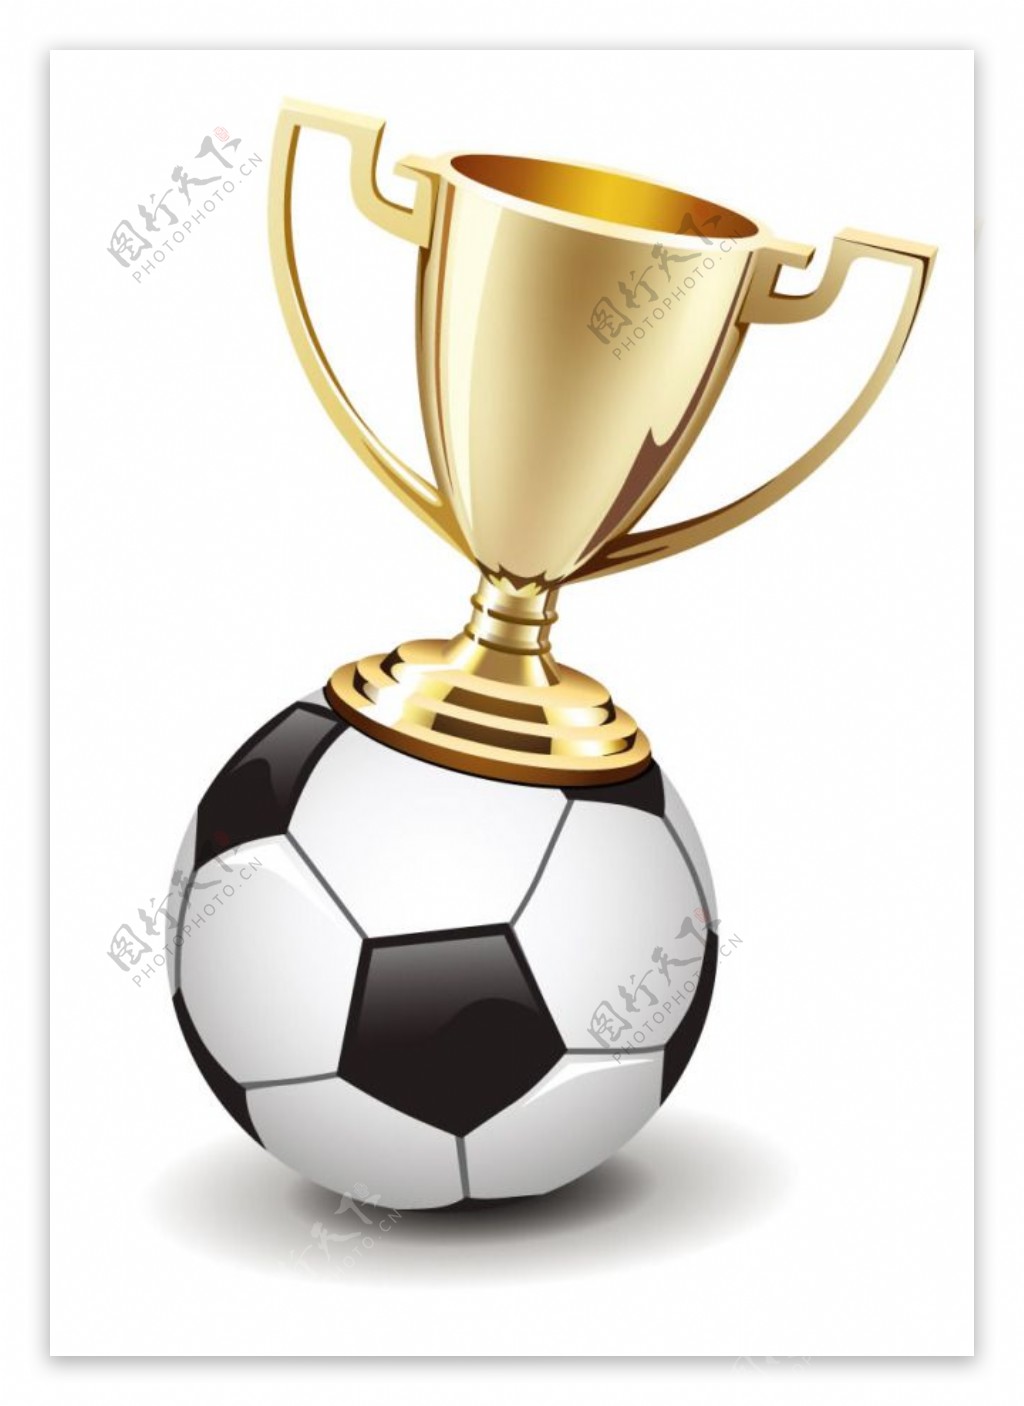 精美奖杯与足球设计矢量素材